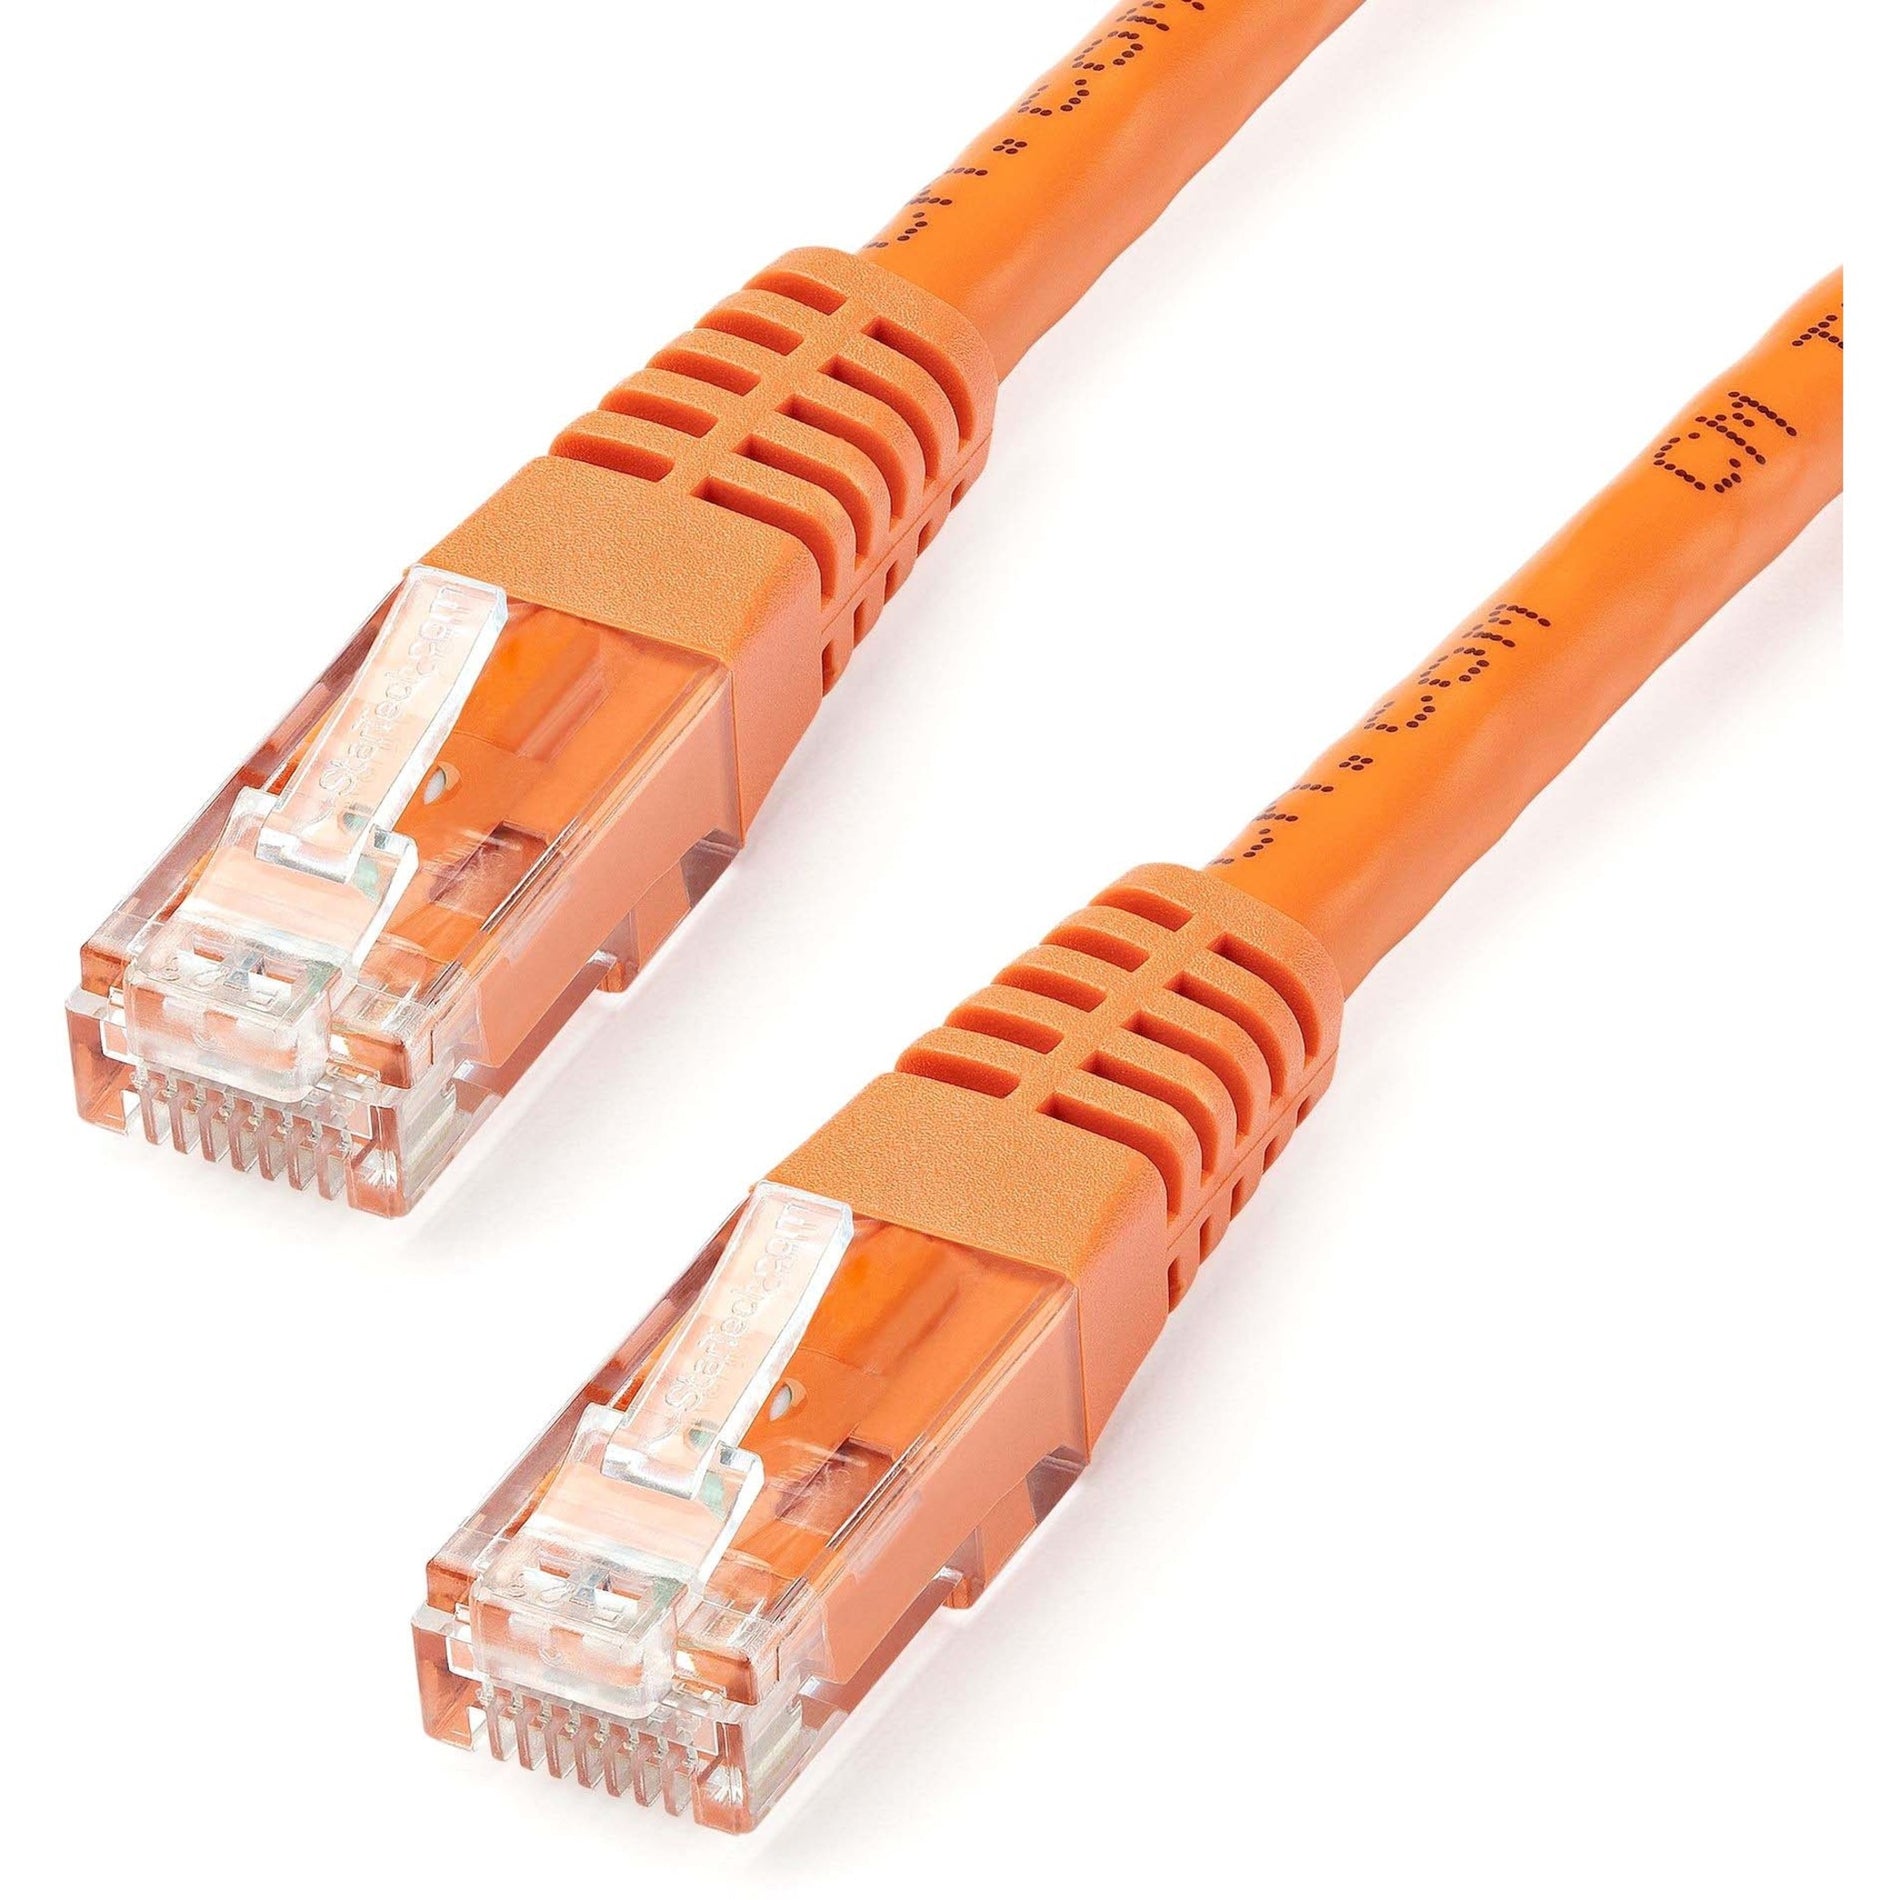 StarTech.com C6PATCH50OR 50ft Orange Cat6 UTP Patch Cable ETL Verified, Gigabit Ethernet Network Cord